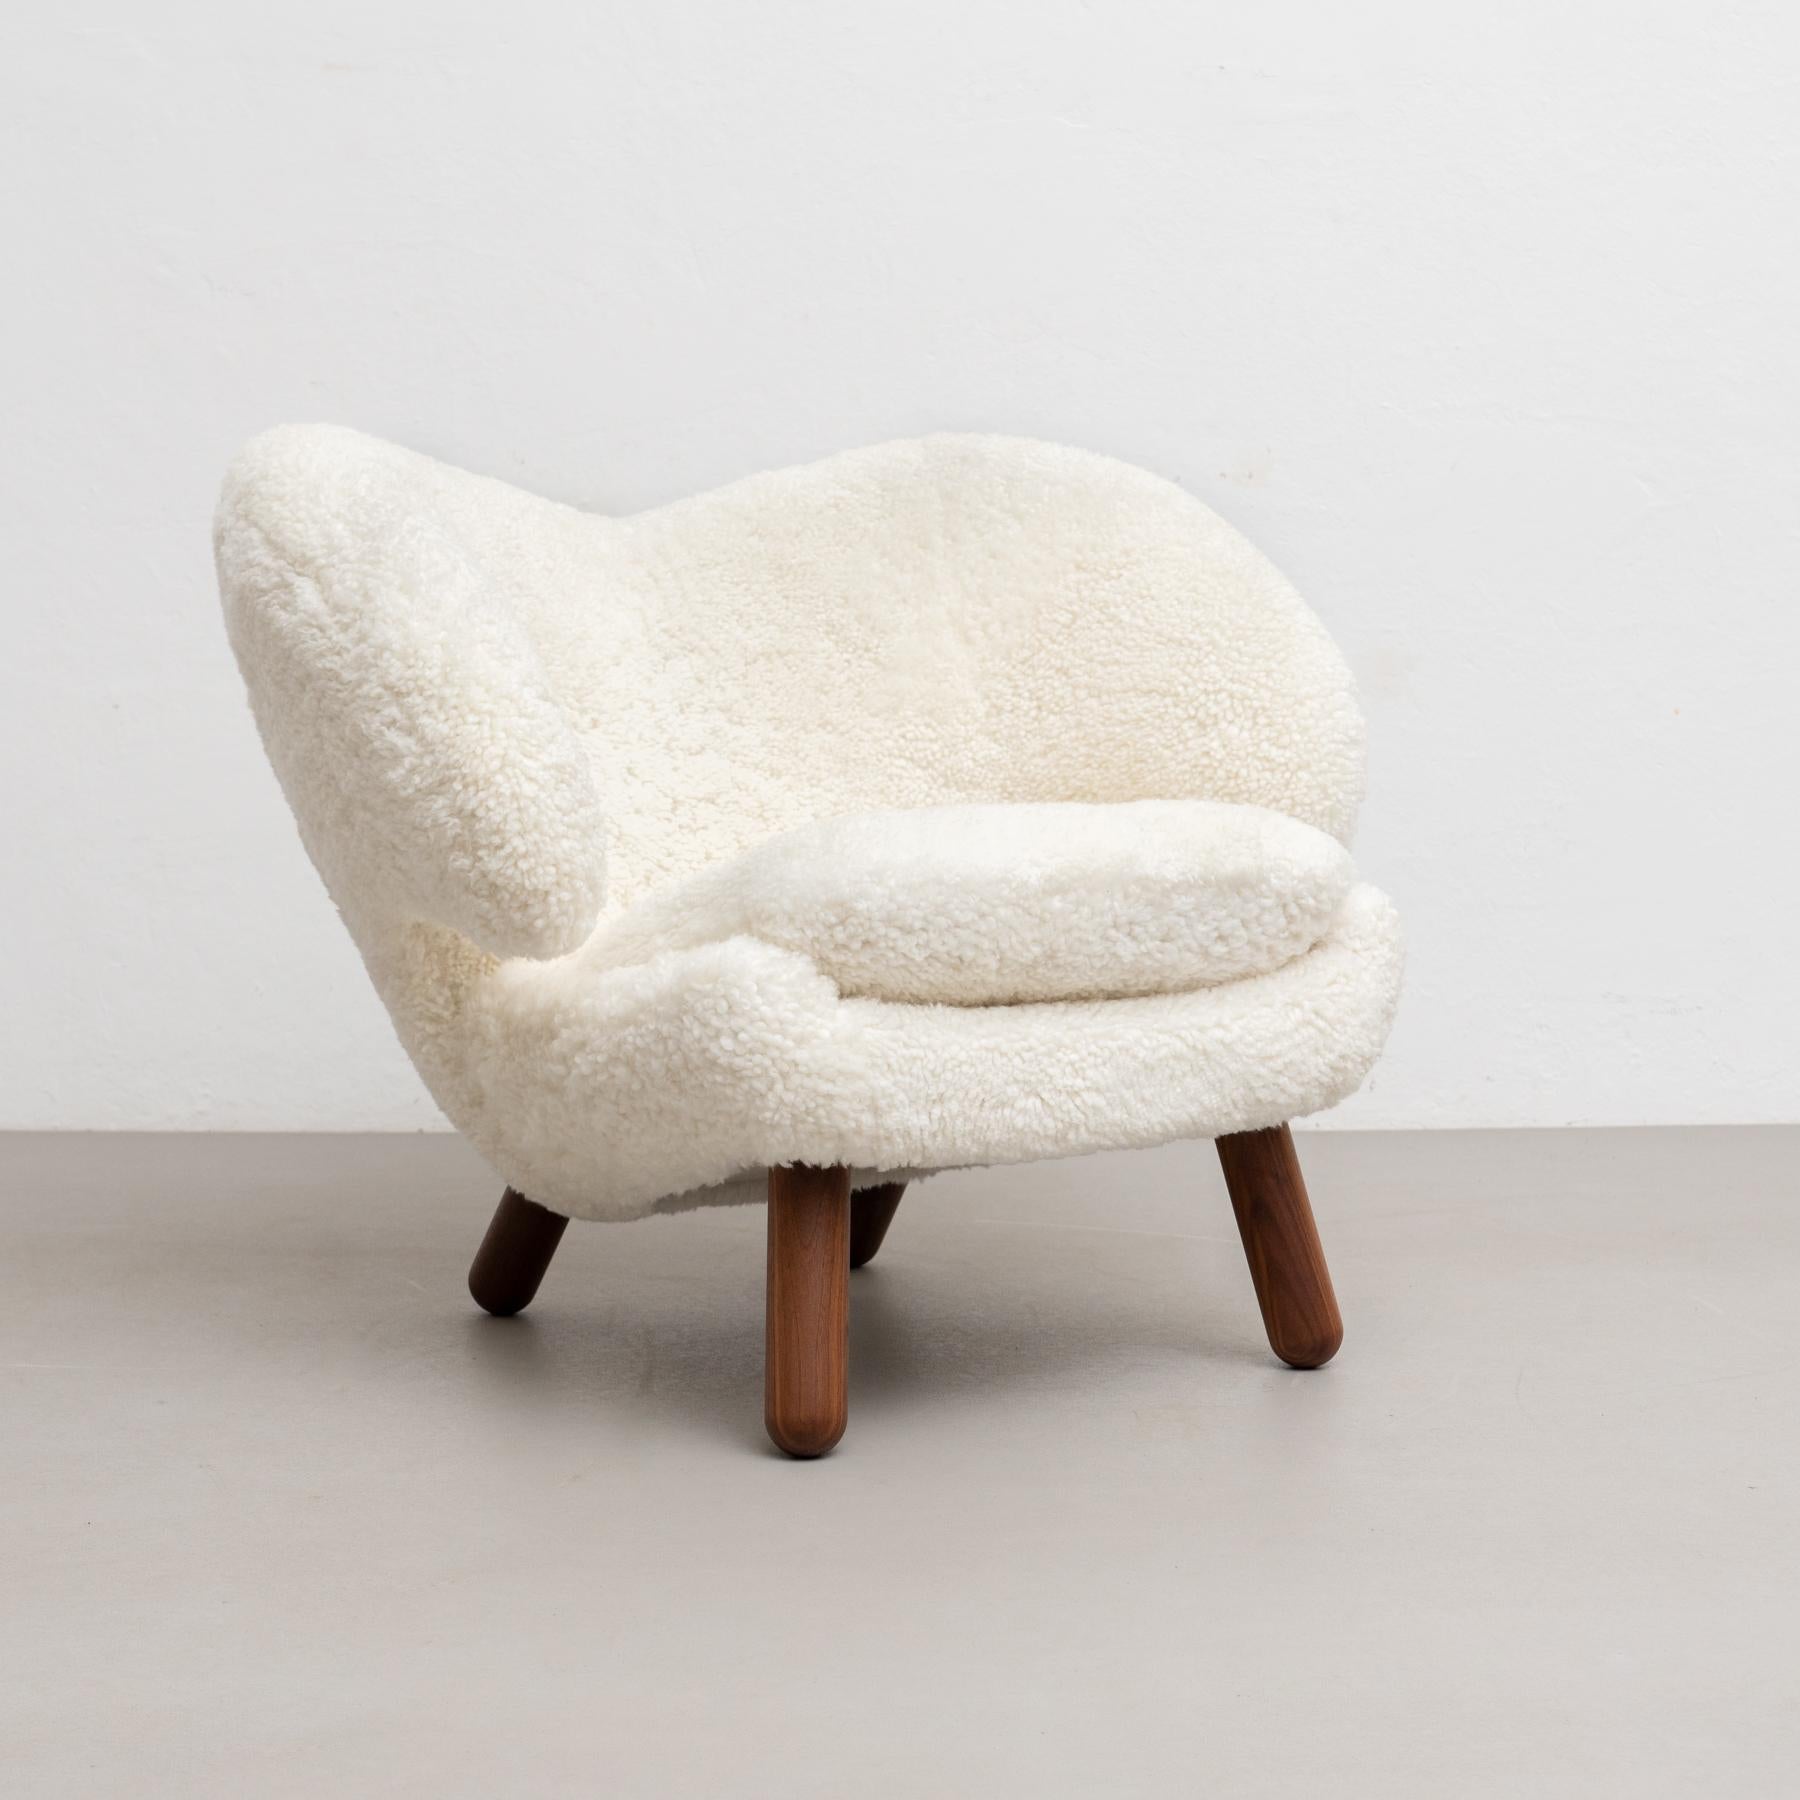 Finn Juhl Pelican Chair Upholstered in Gotland Sheepskin For Sale 1